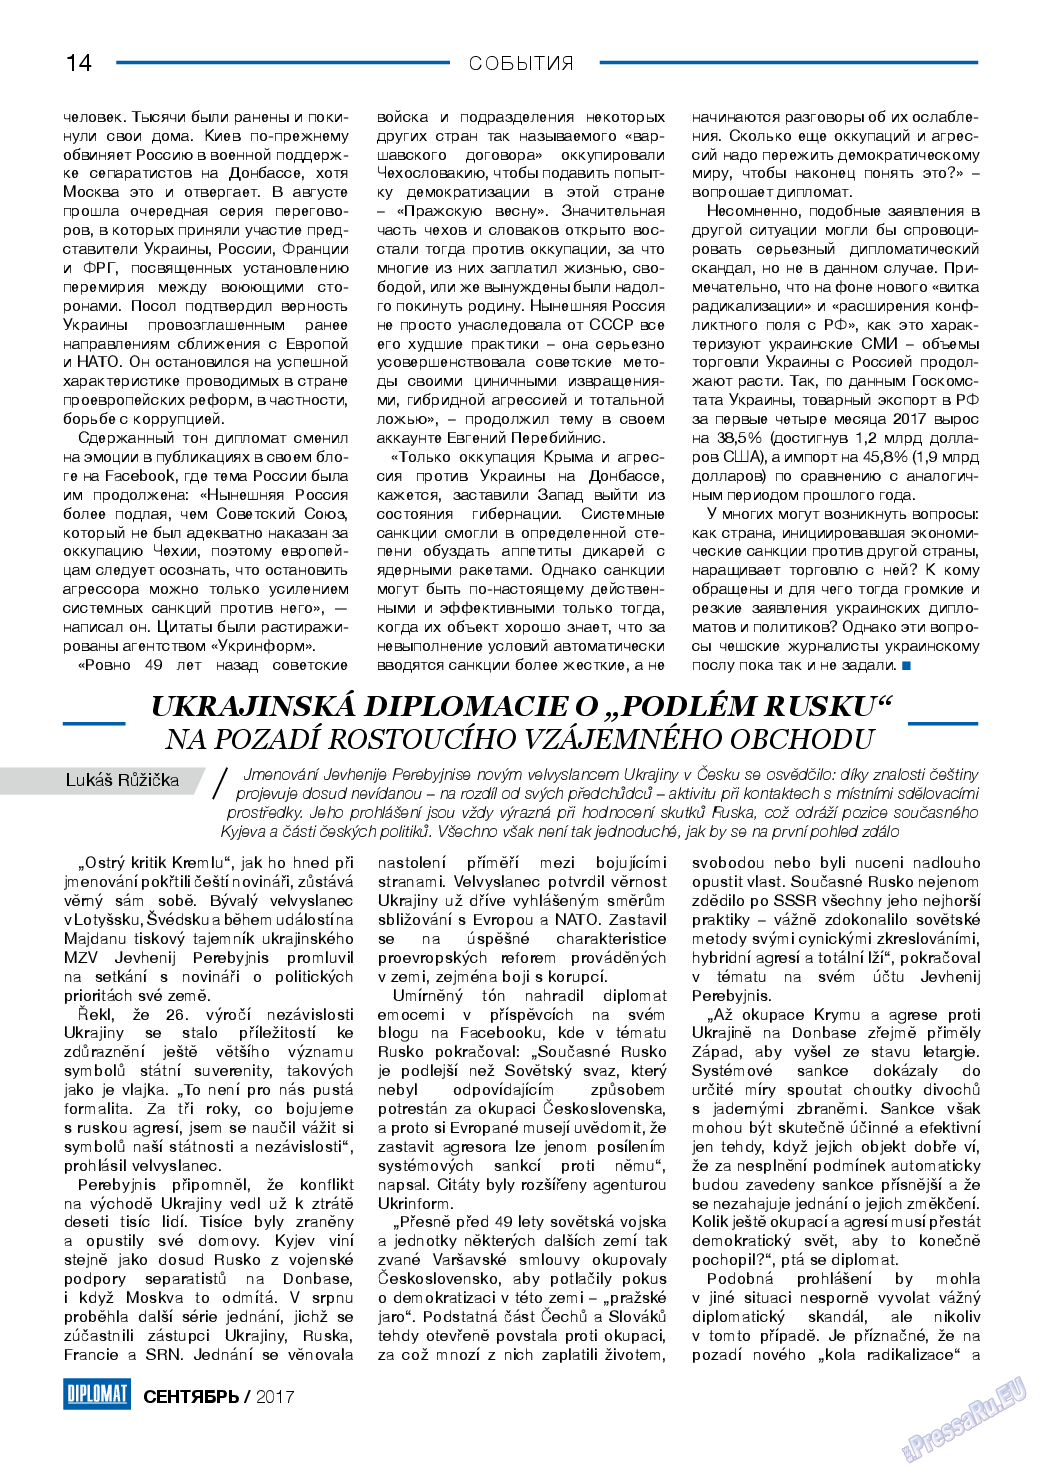 Diplomat, газета. 2017 №96 стр.14